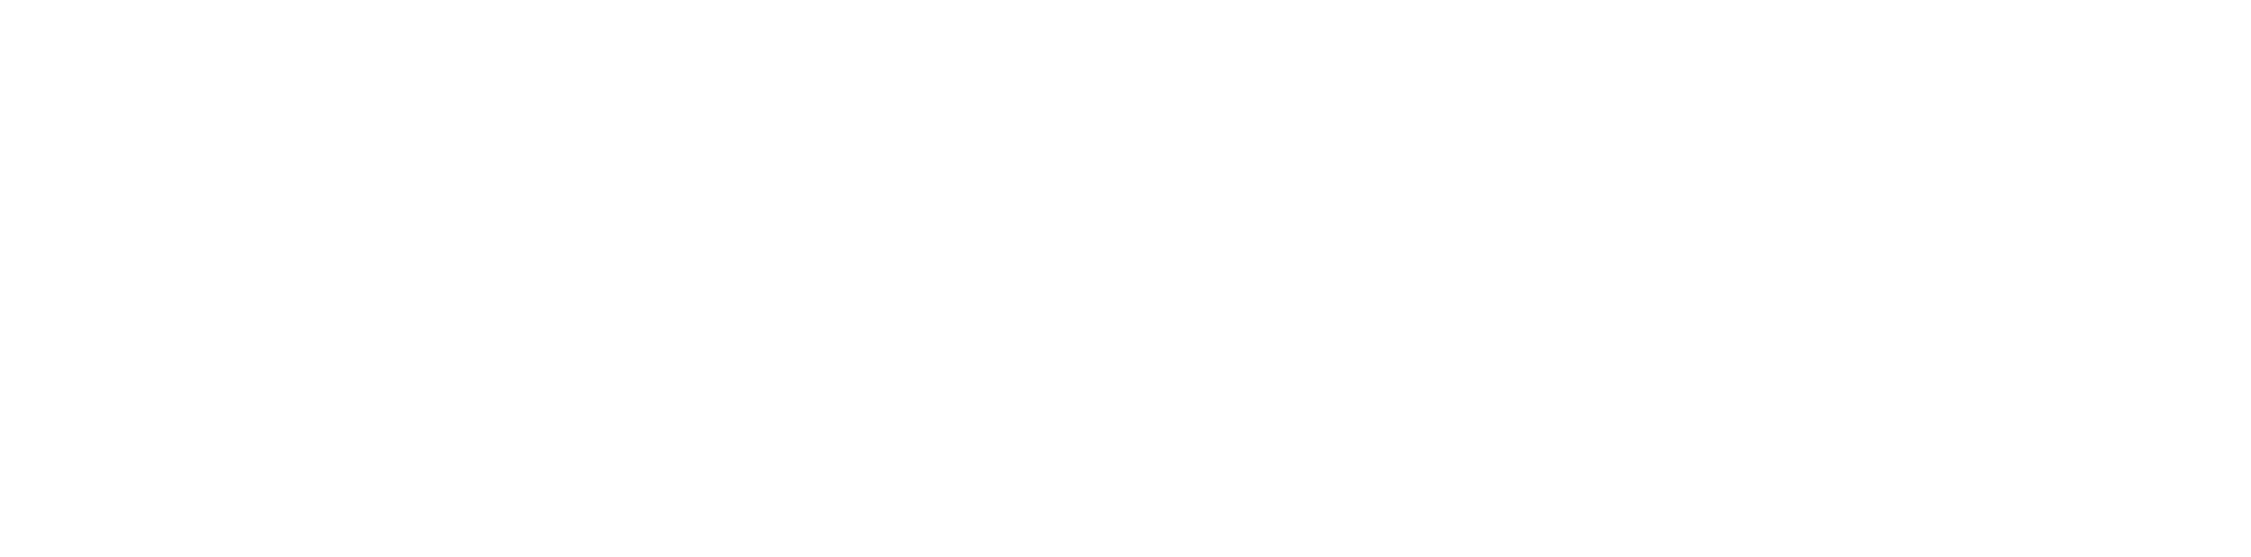 Travers St. Louis RV Service & Body